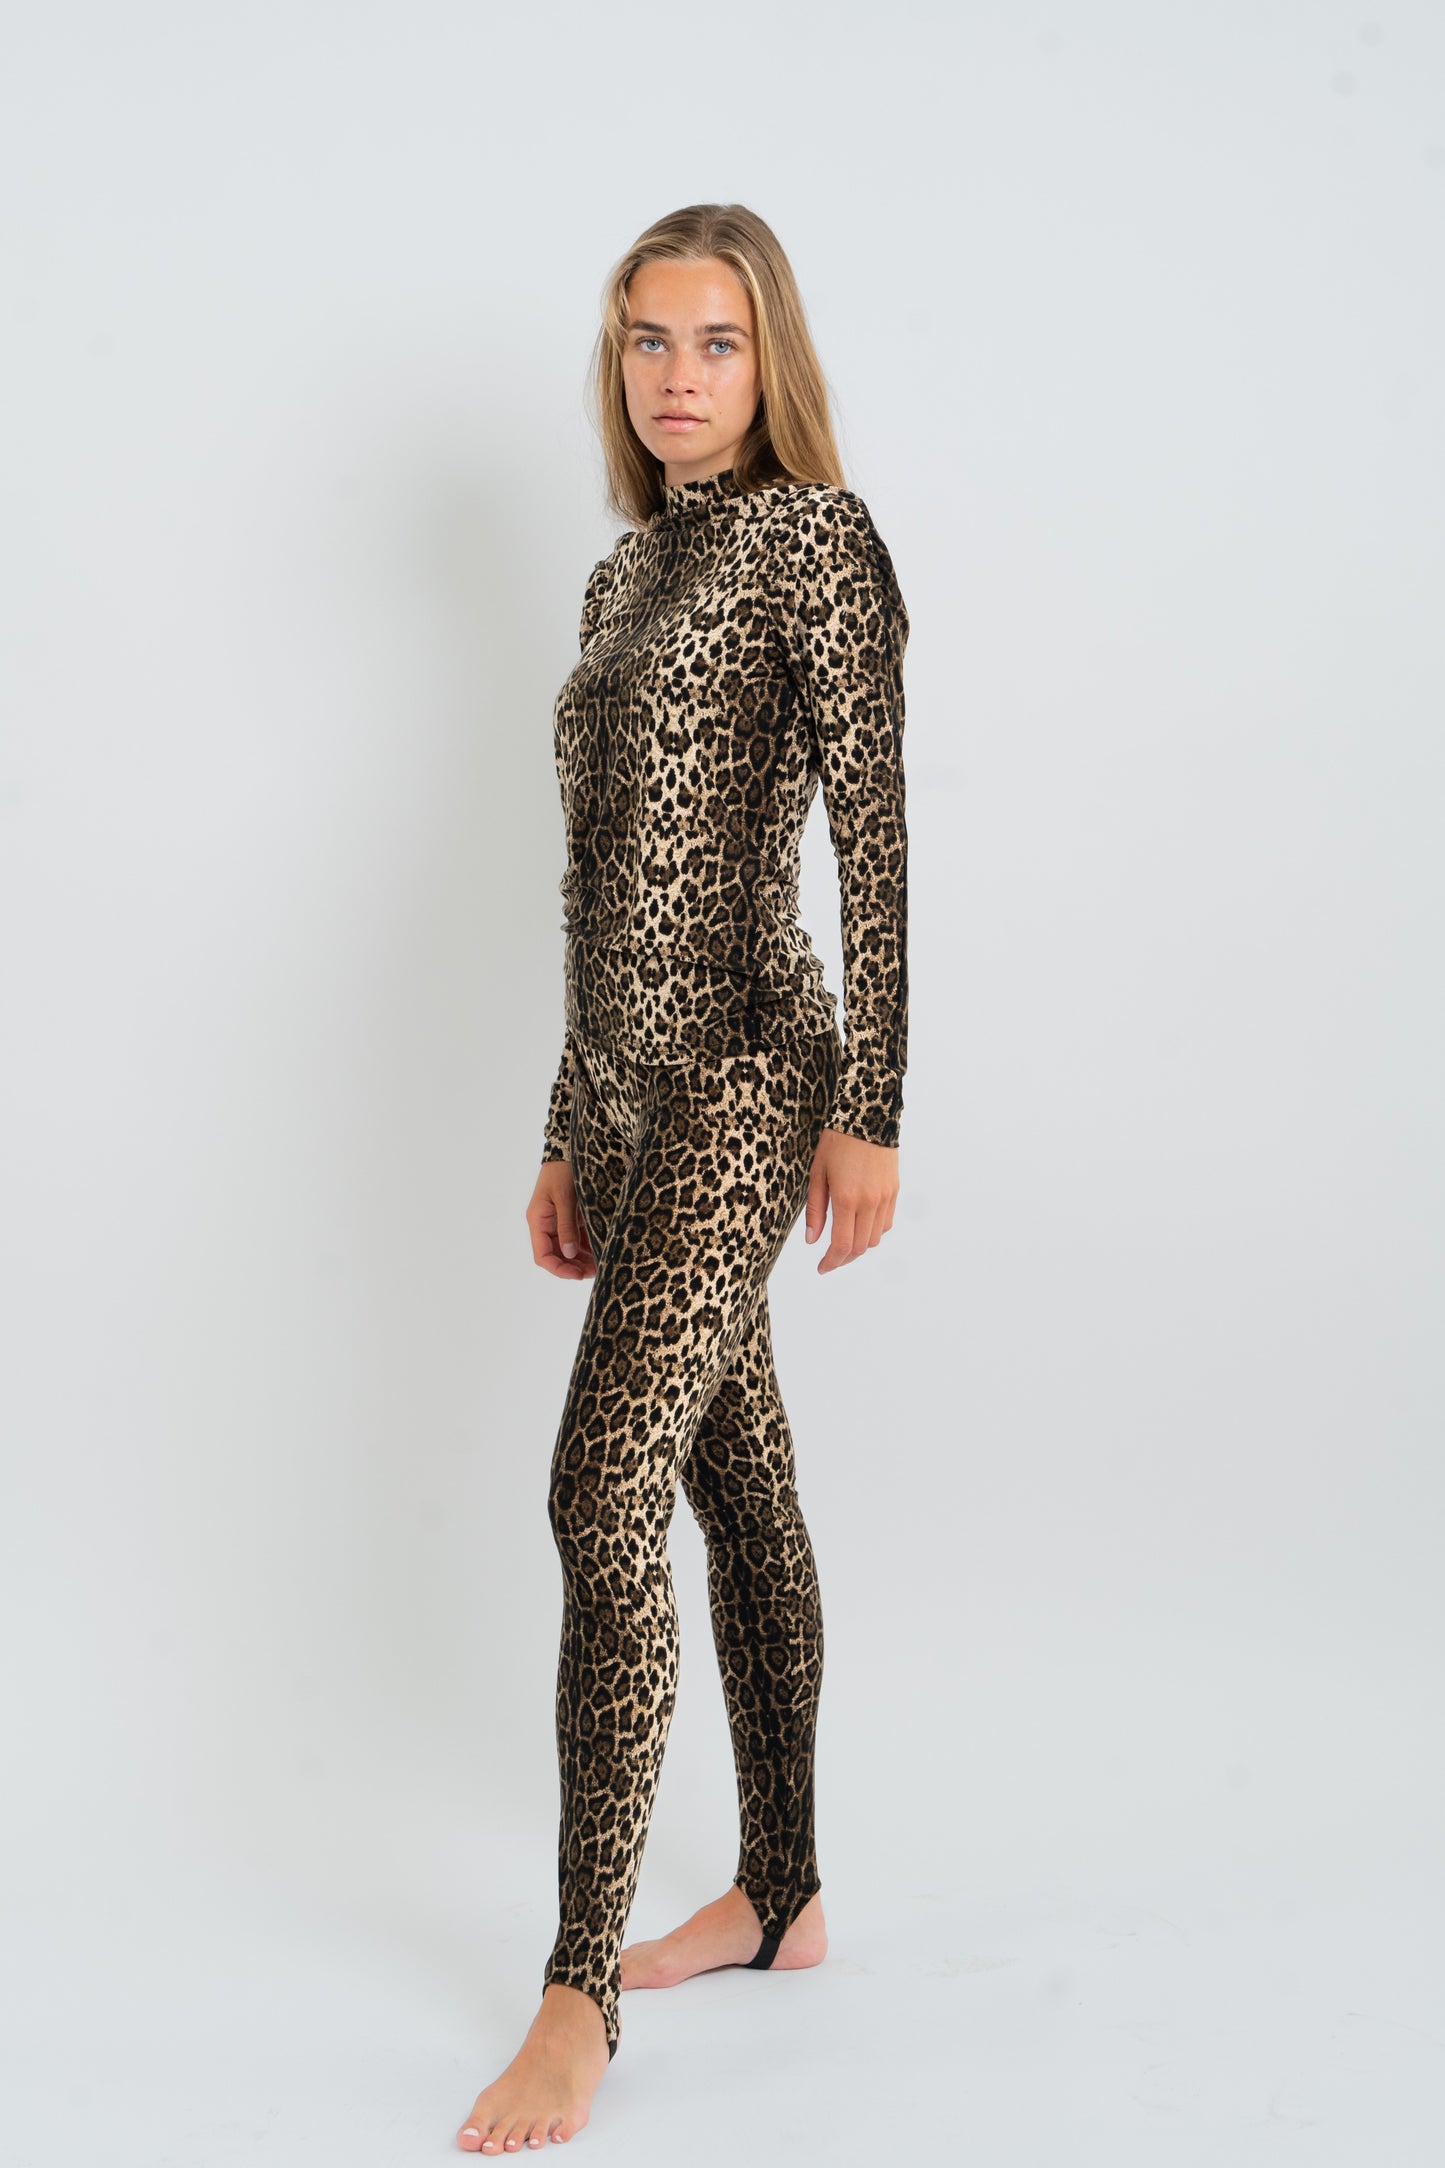 Lollys Laundry Ellen Blouse Shirt 72 Leopard Print